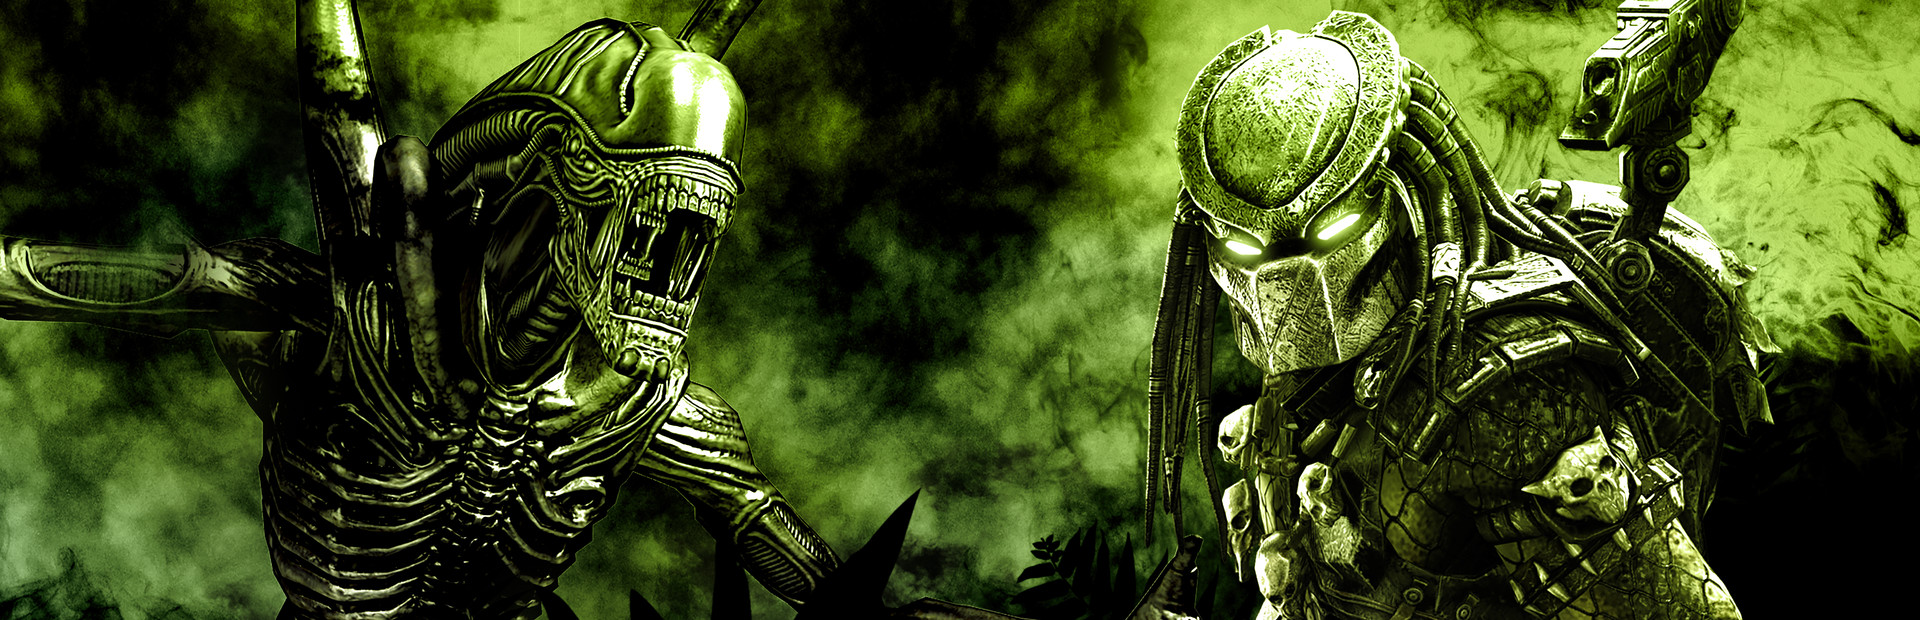 Aliens vs. Predator cover image